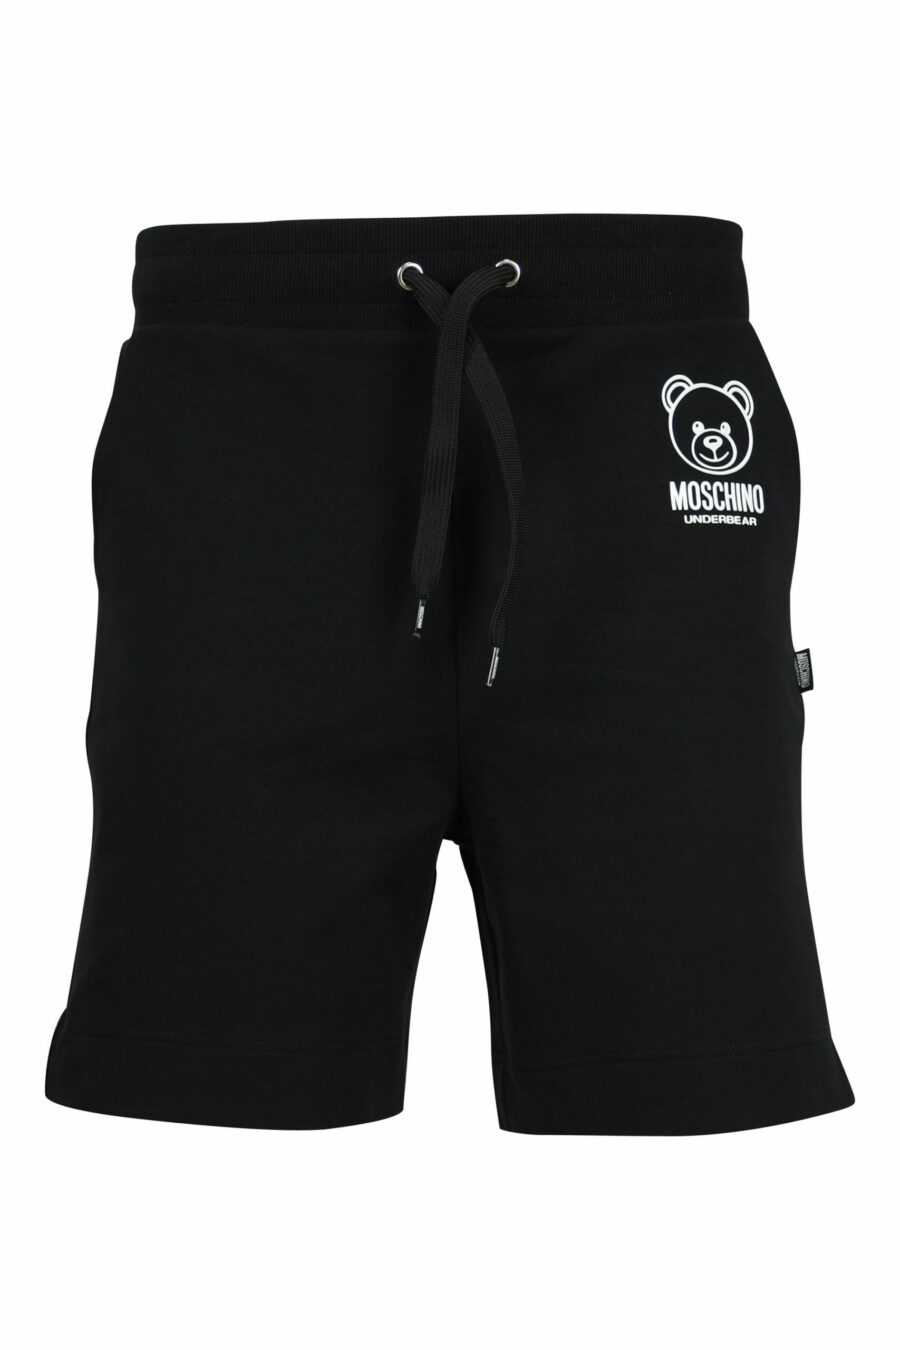 Pantalón de chándal corto negro con minilogo oso "underbear" en goma negro - 667113622200 scaled